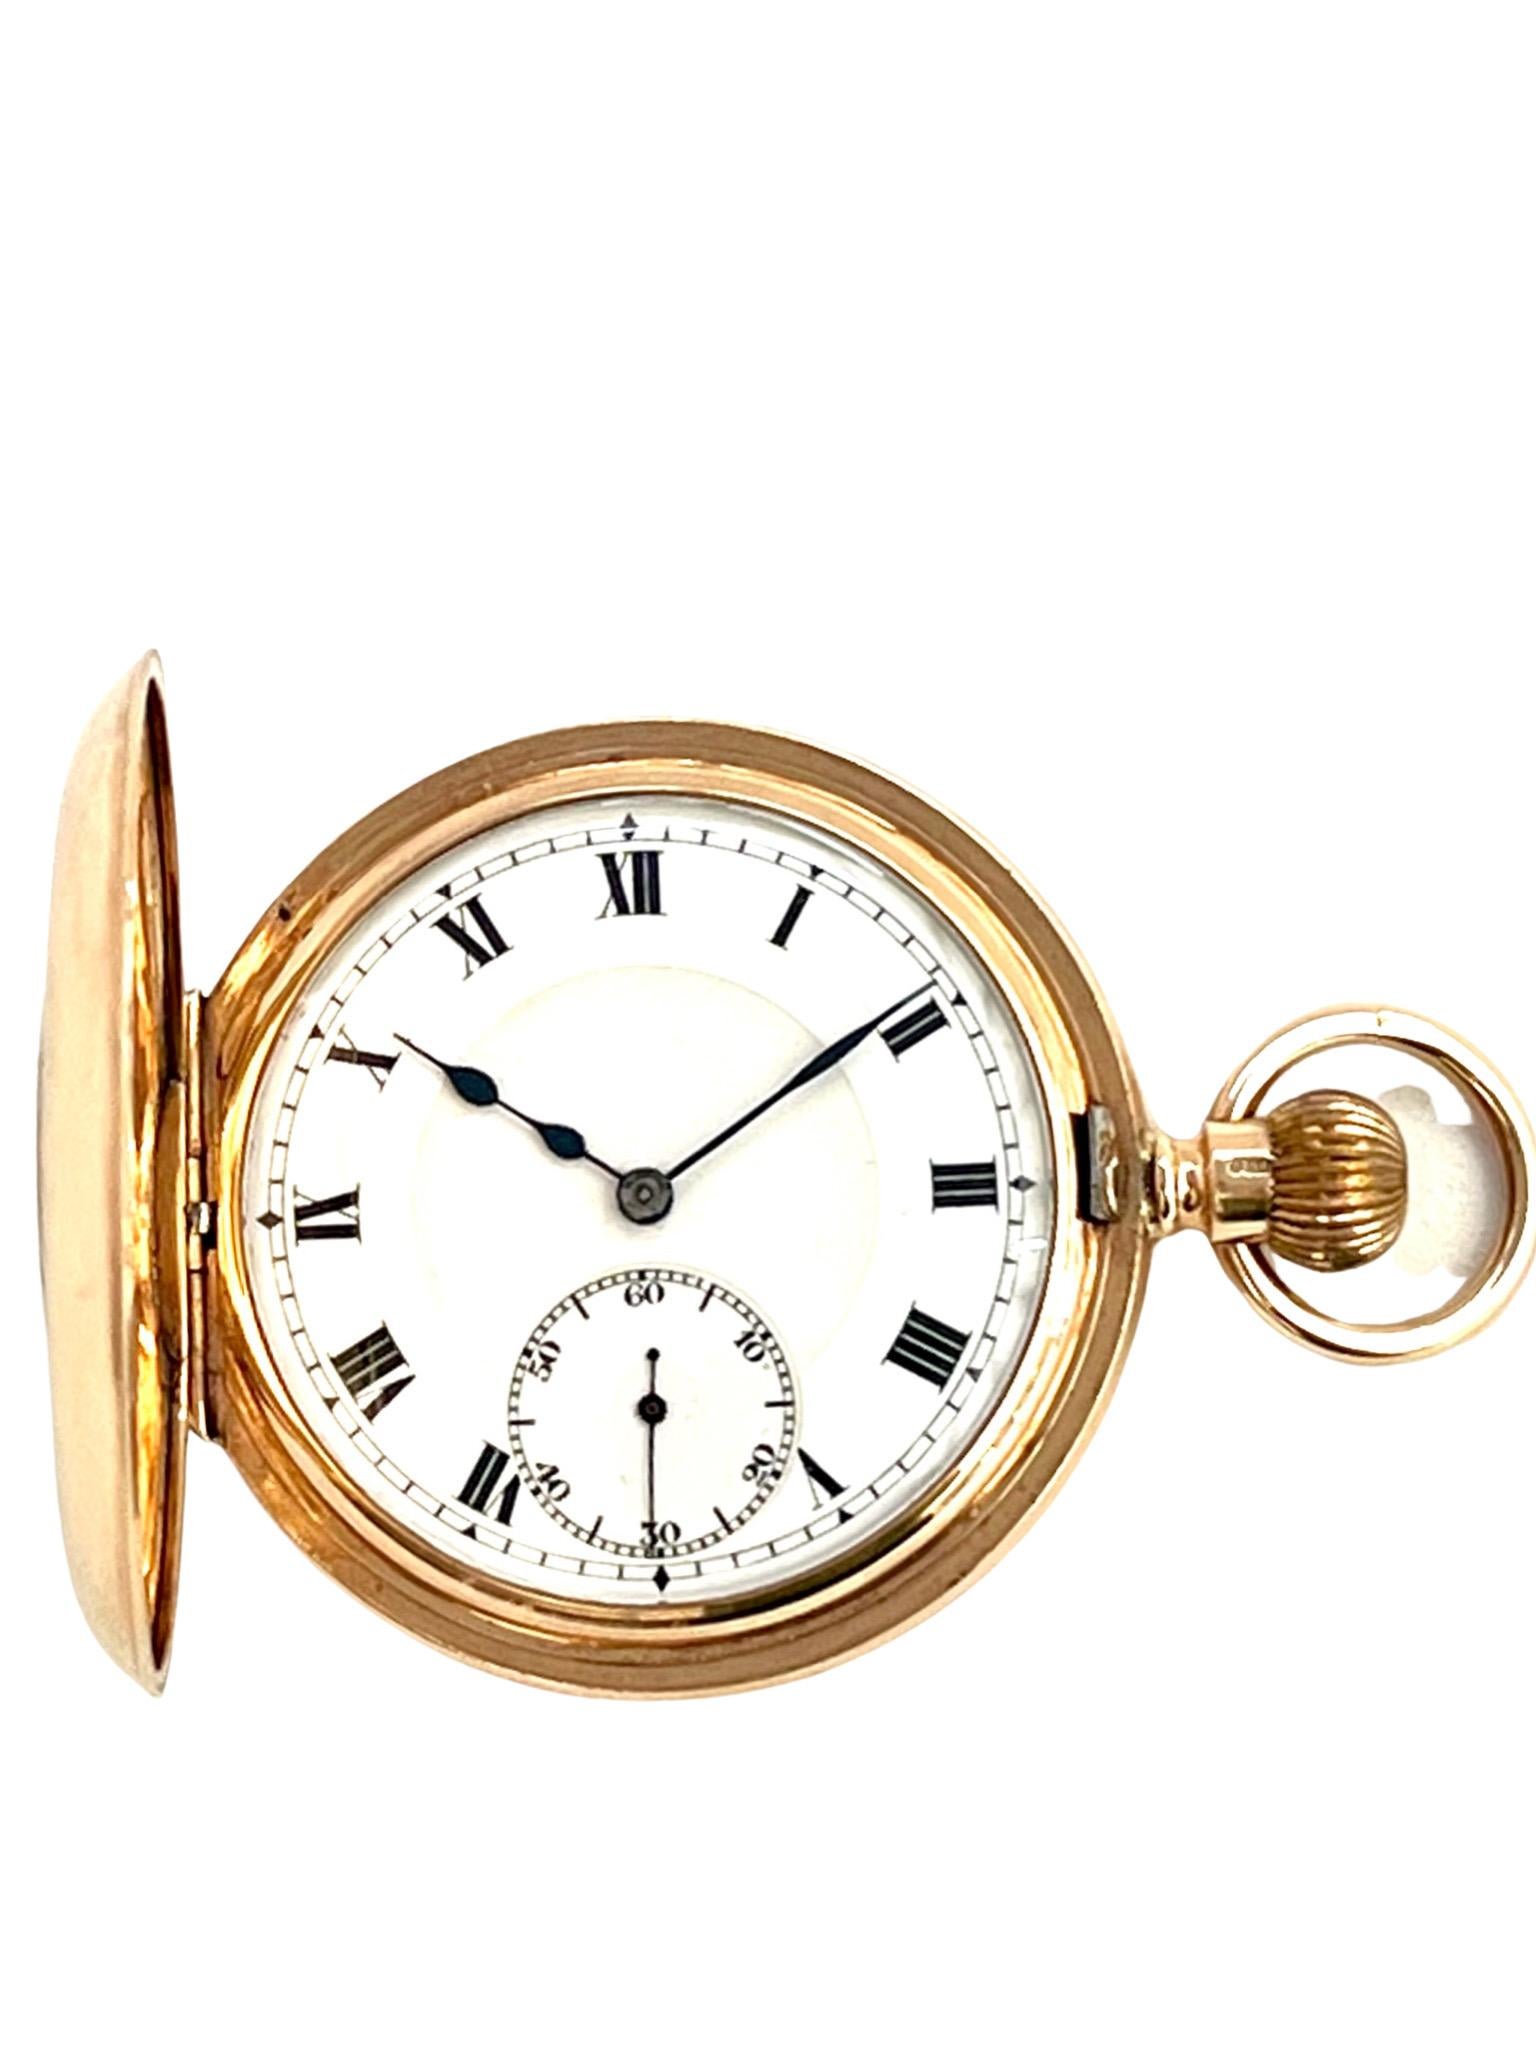 Eine große Taschenuhr aus 9 Karat massivem Gold von Syren Watch Company, Schweiz. Vollständig gestempelt Chester, 1922

Mit einer goldenen Aufzugskrone und einer Schleife an der Oberseite gibt das äußere gravierte römische Zifferblatt auf der